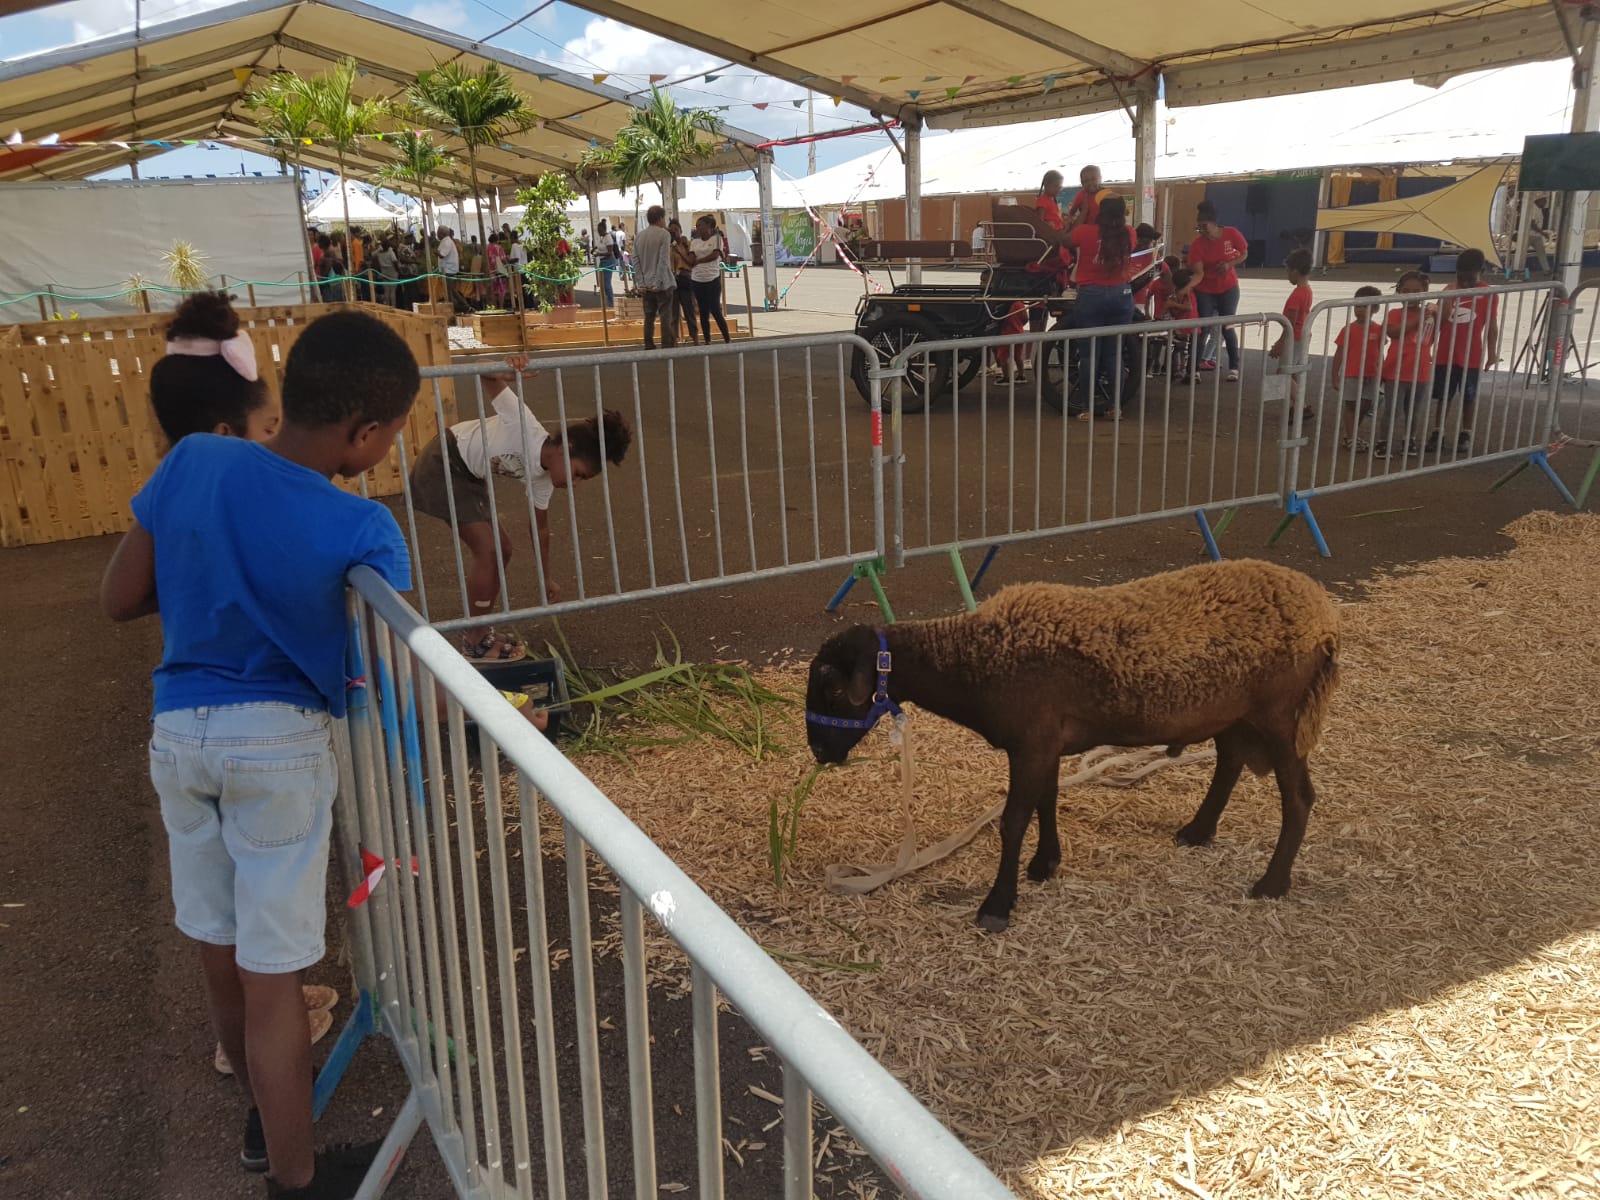     Les animaux de la ferme invités de la Foire Expo à Dillon

